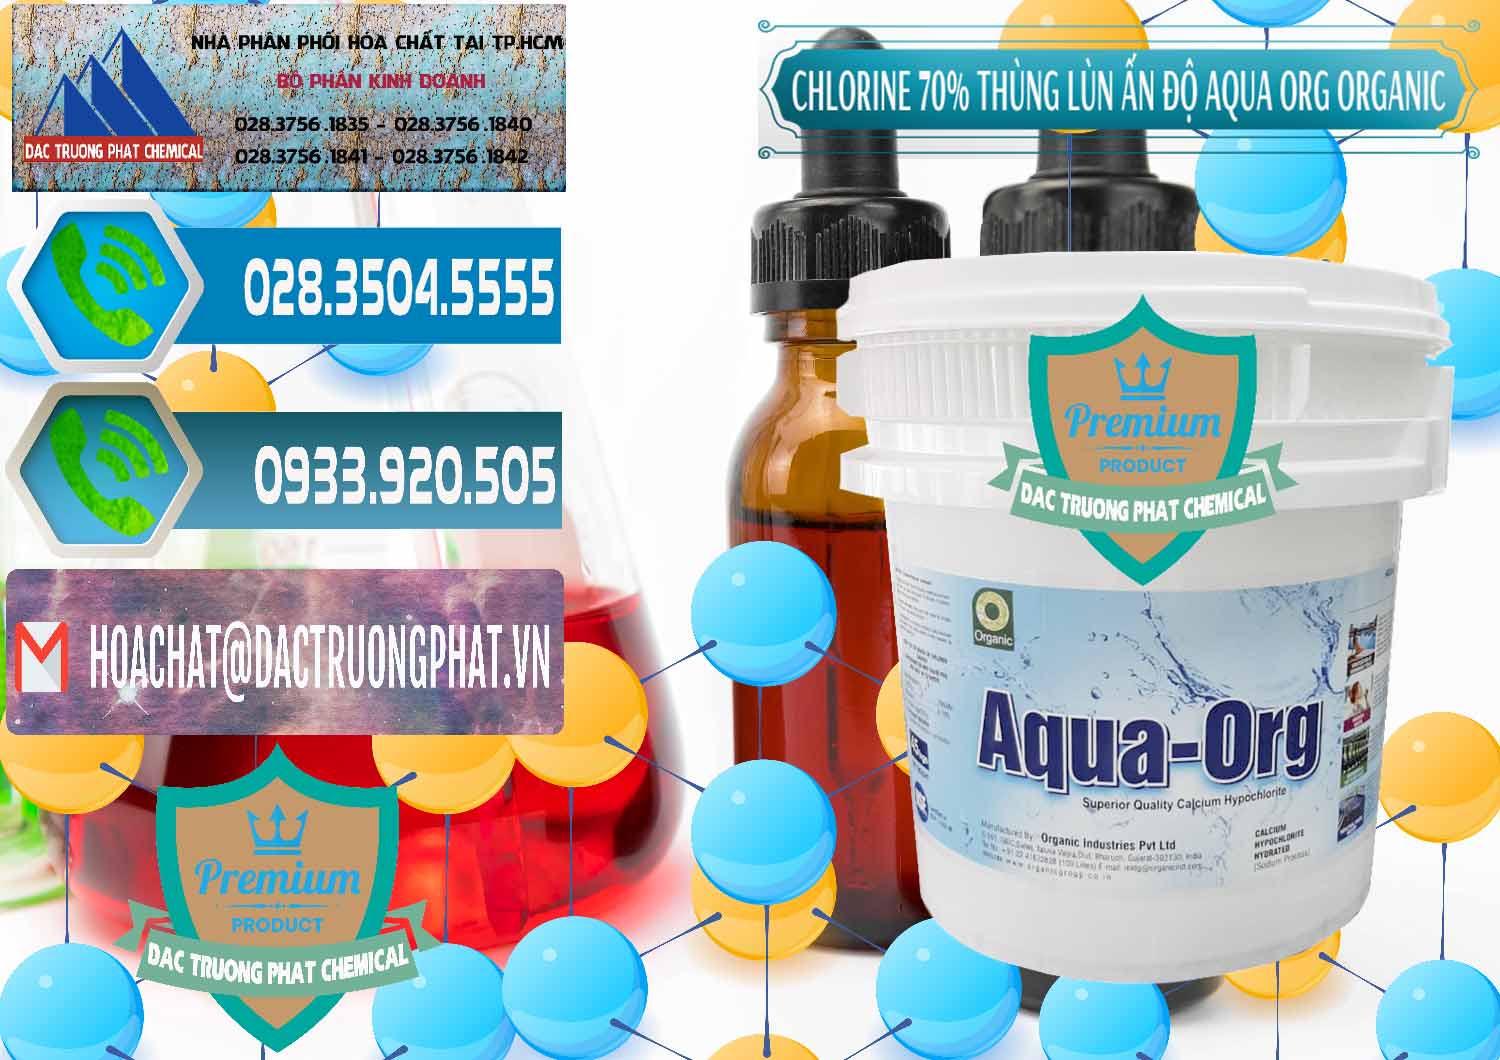 Chuyên bán - cung cấp Chlorine – Clorin 70% Thùng Lùn Ấn Độ Aqua ORG Organic India - 0212 - Công ty kinh doanh và cung cấp hóa chất tại TP.HCM - congtyhoachat.net